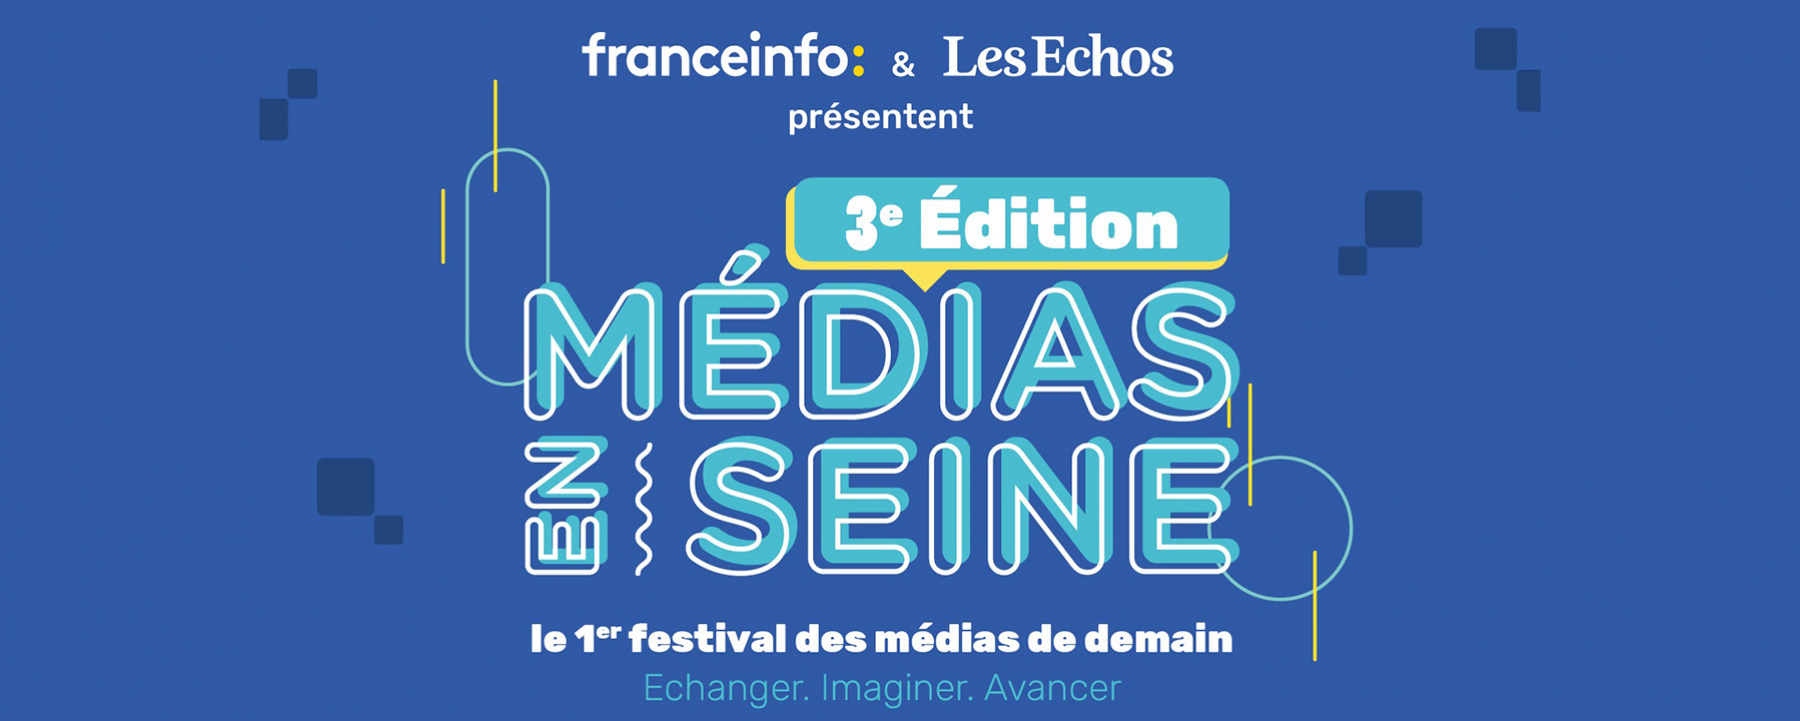 3e édition Médias en Seine, un événement organisé par Les Echos et France Info le 19 novembre